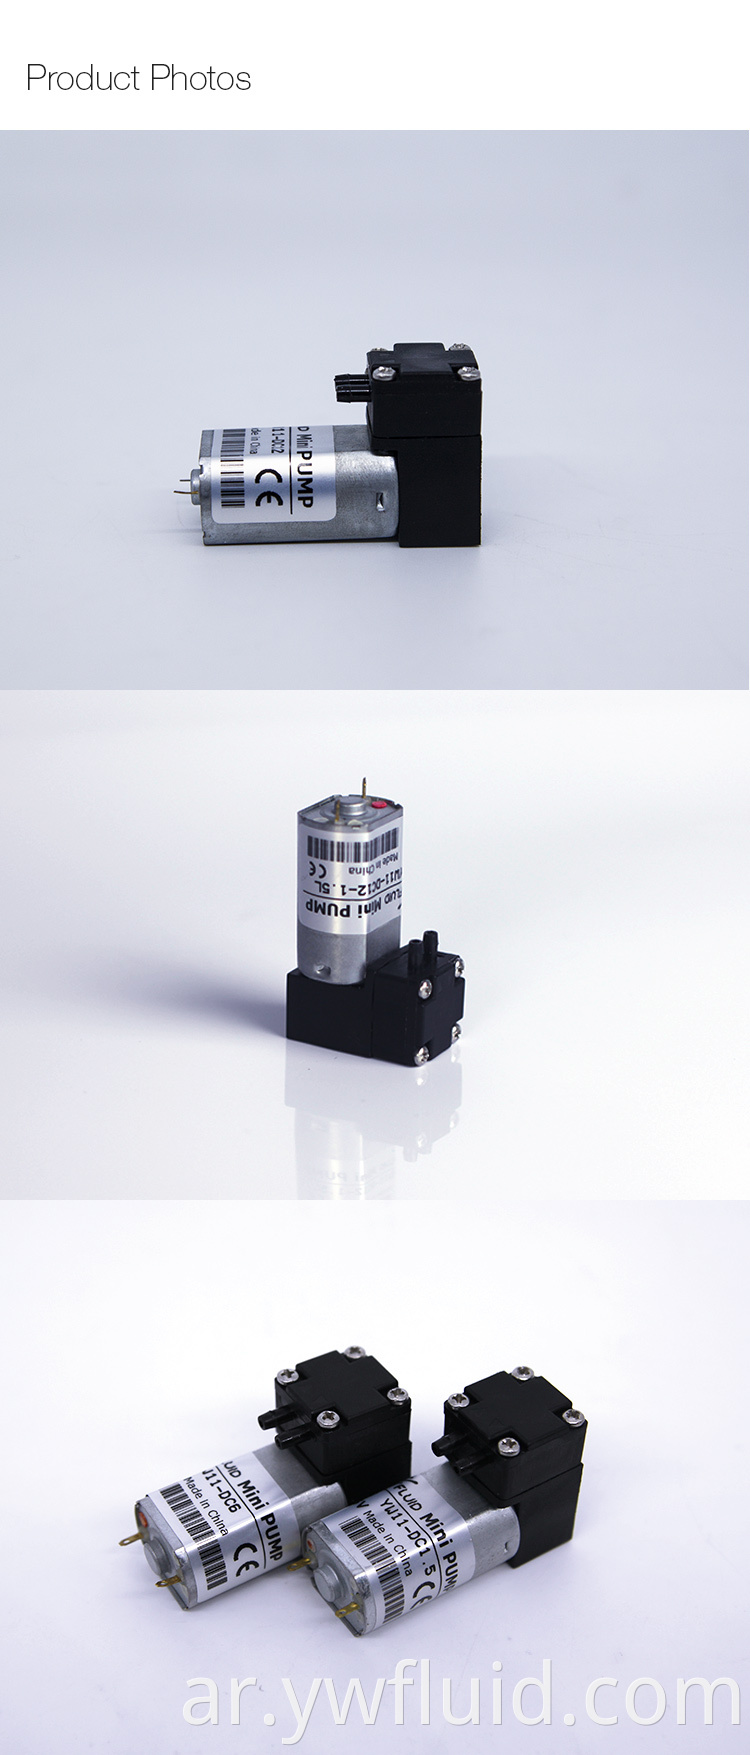 ywfluid chemical resistanc مضخات مصغرة مع محرك BLDC المستخدمة لتحليل العينة